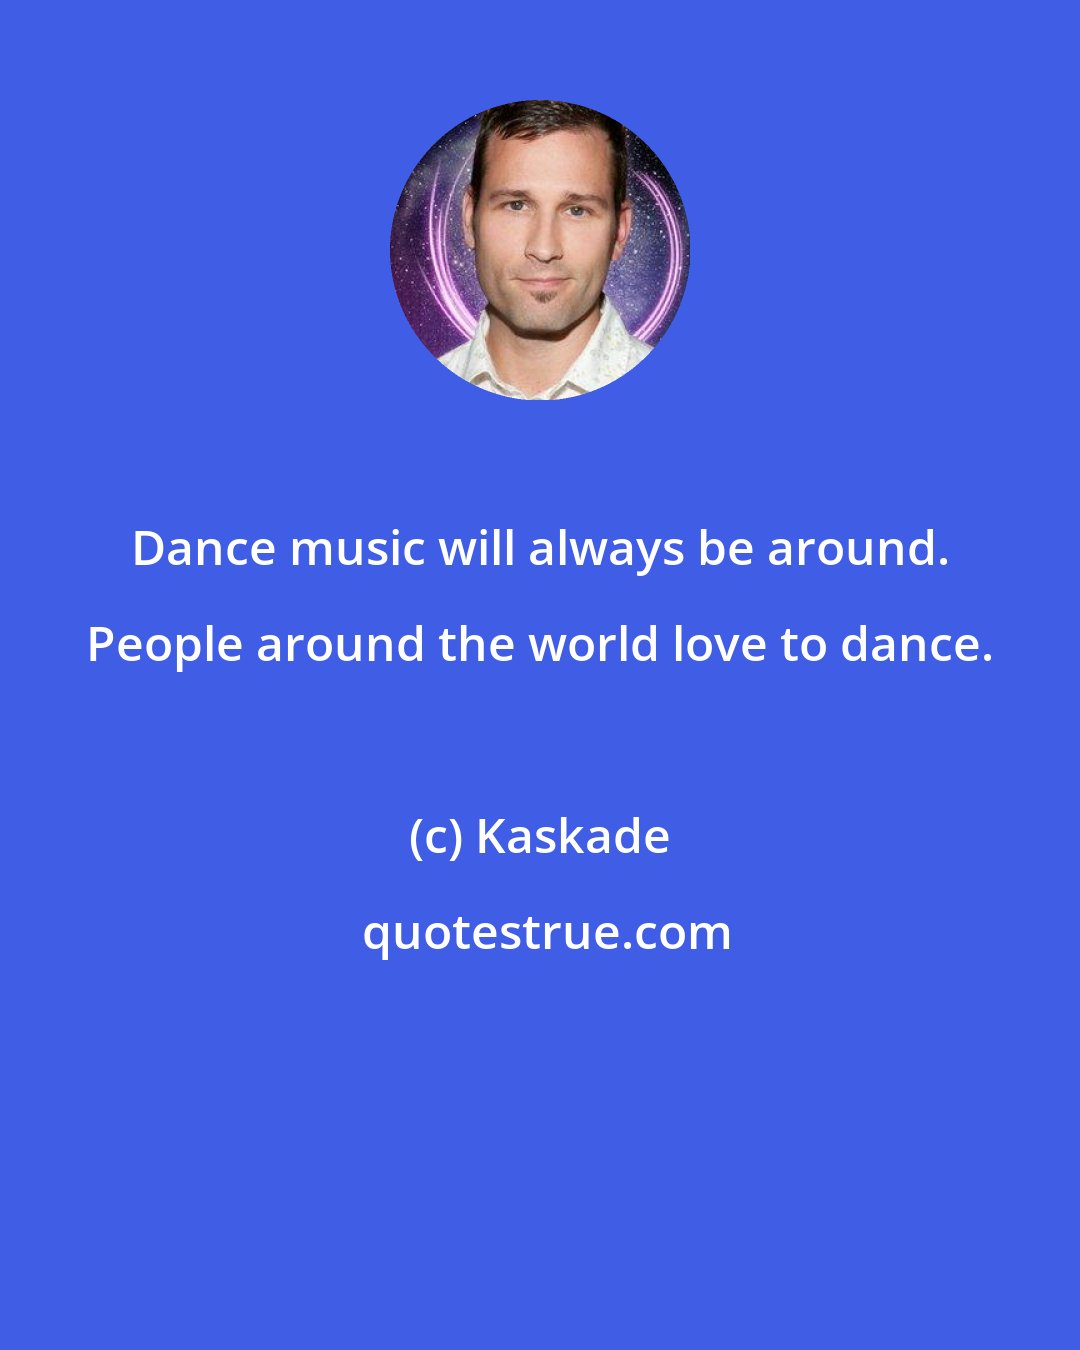 Kaskade: Dance music will always be around. People around the world love to dance.